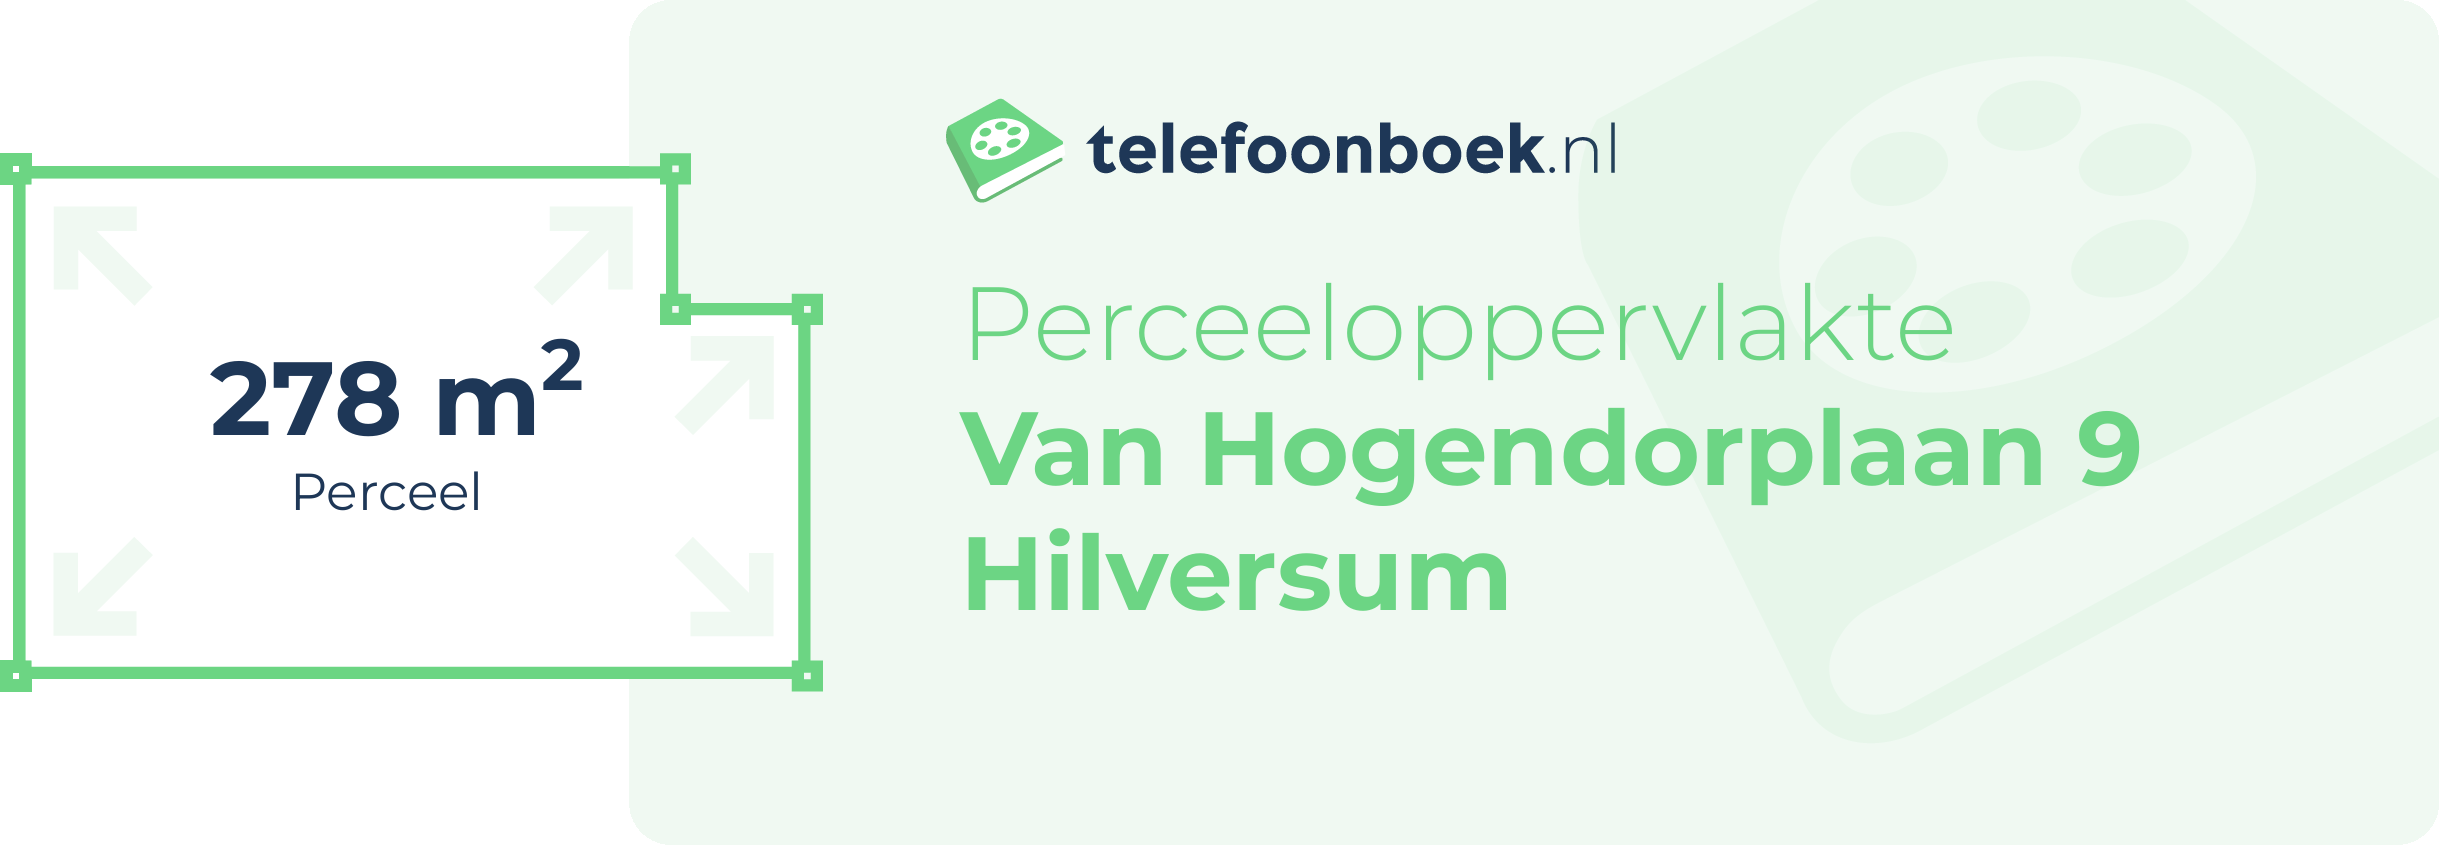 Perceeloppervlakte Van Hogendorplaan 9 Hilversum